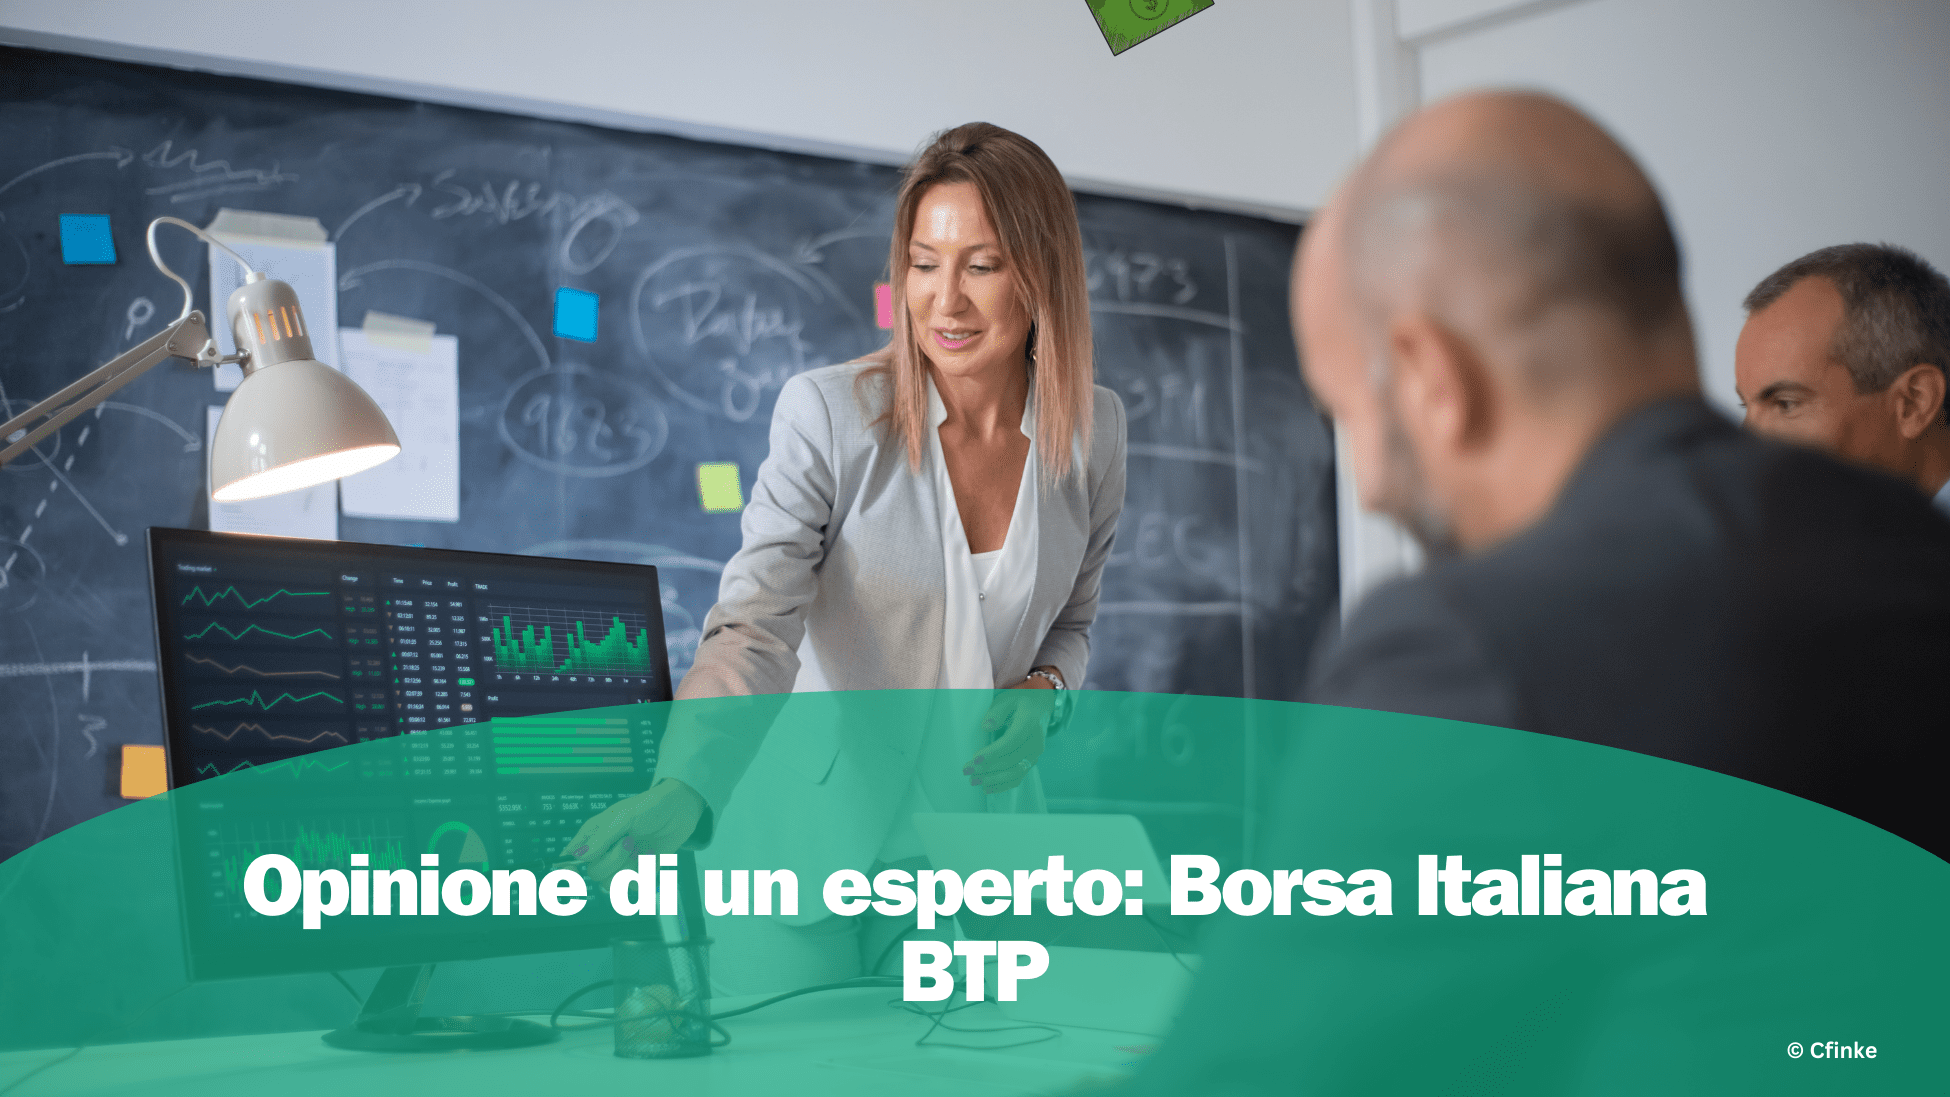 Borsa Italiana BTP